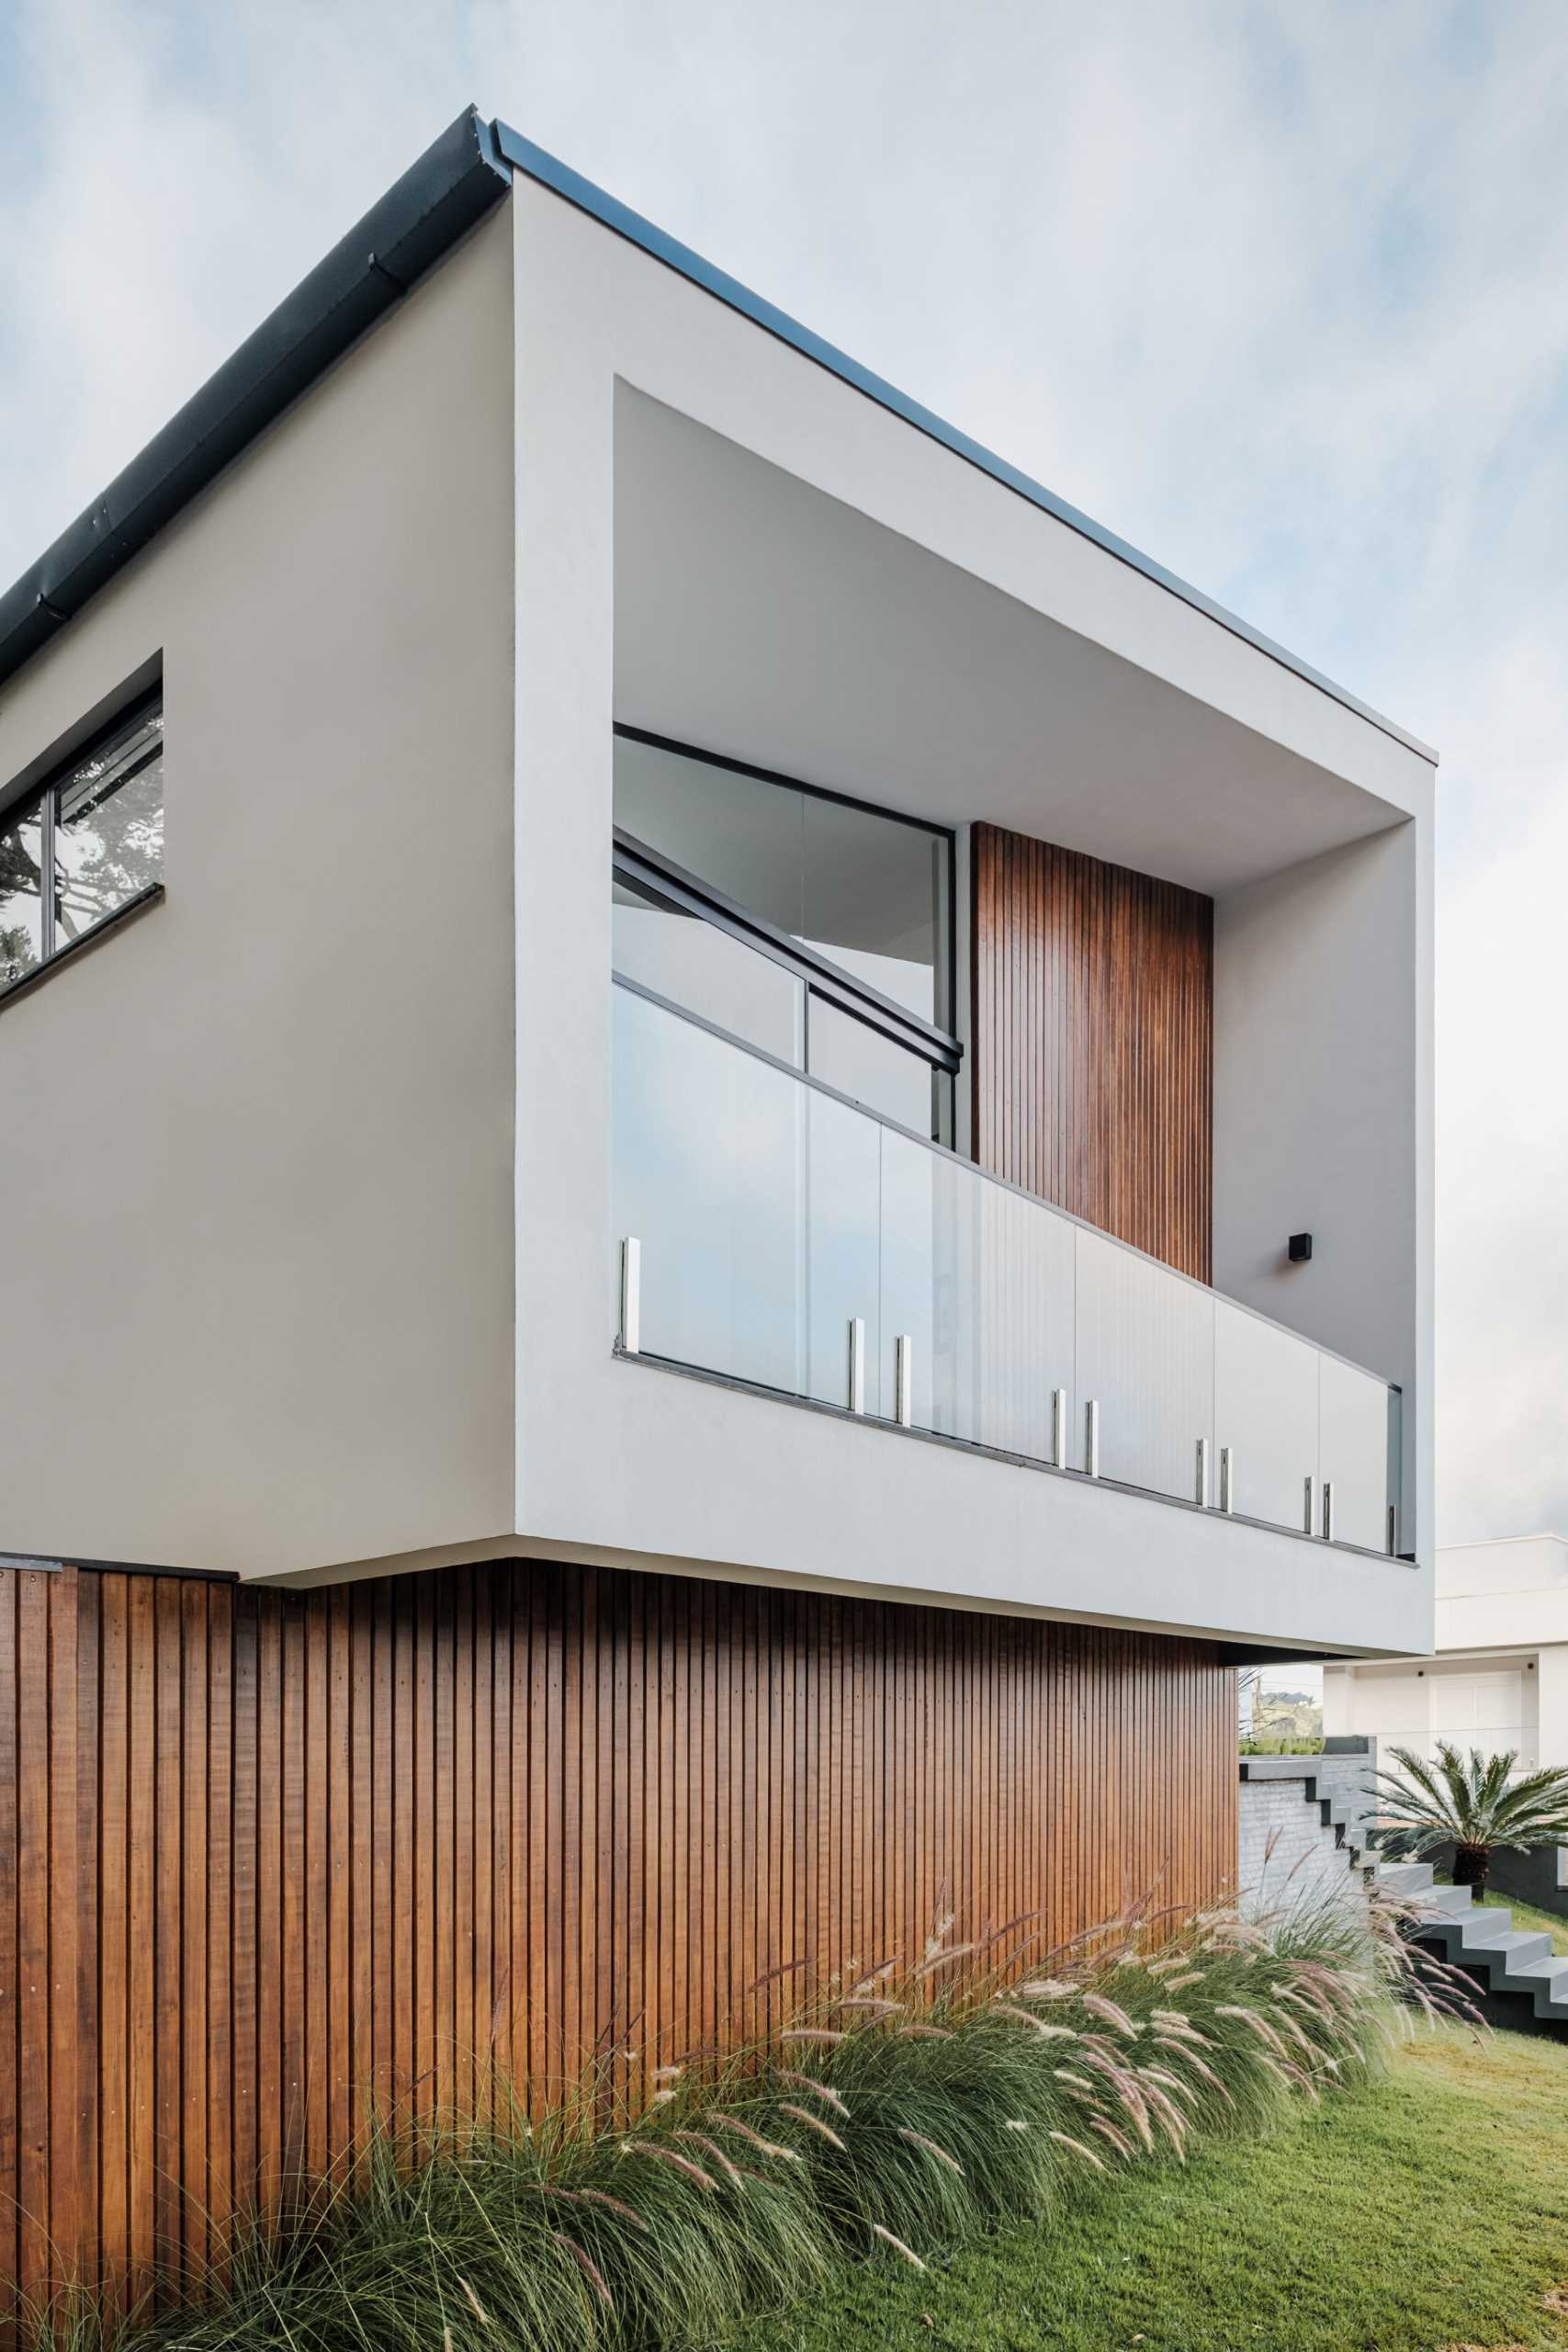 Дизайн этого современного дома демонстрирует современную интерпретацию архетипа остроконечной крыши.